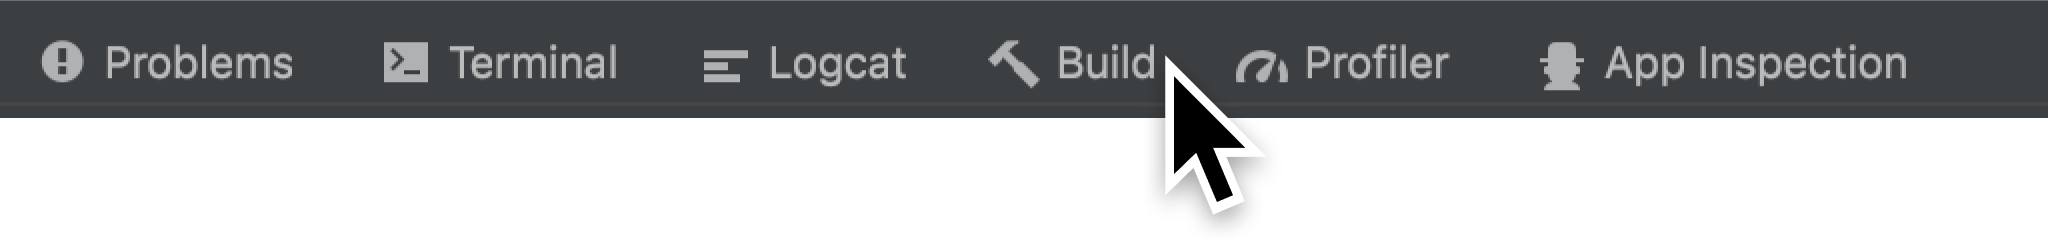 Android Studio の下部の [Build] タブ